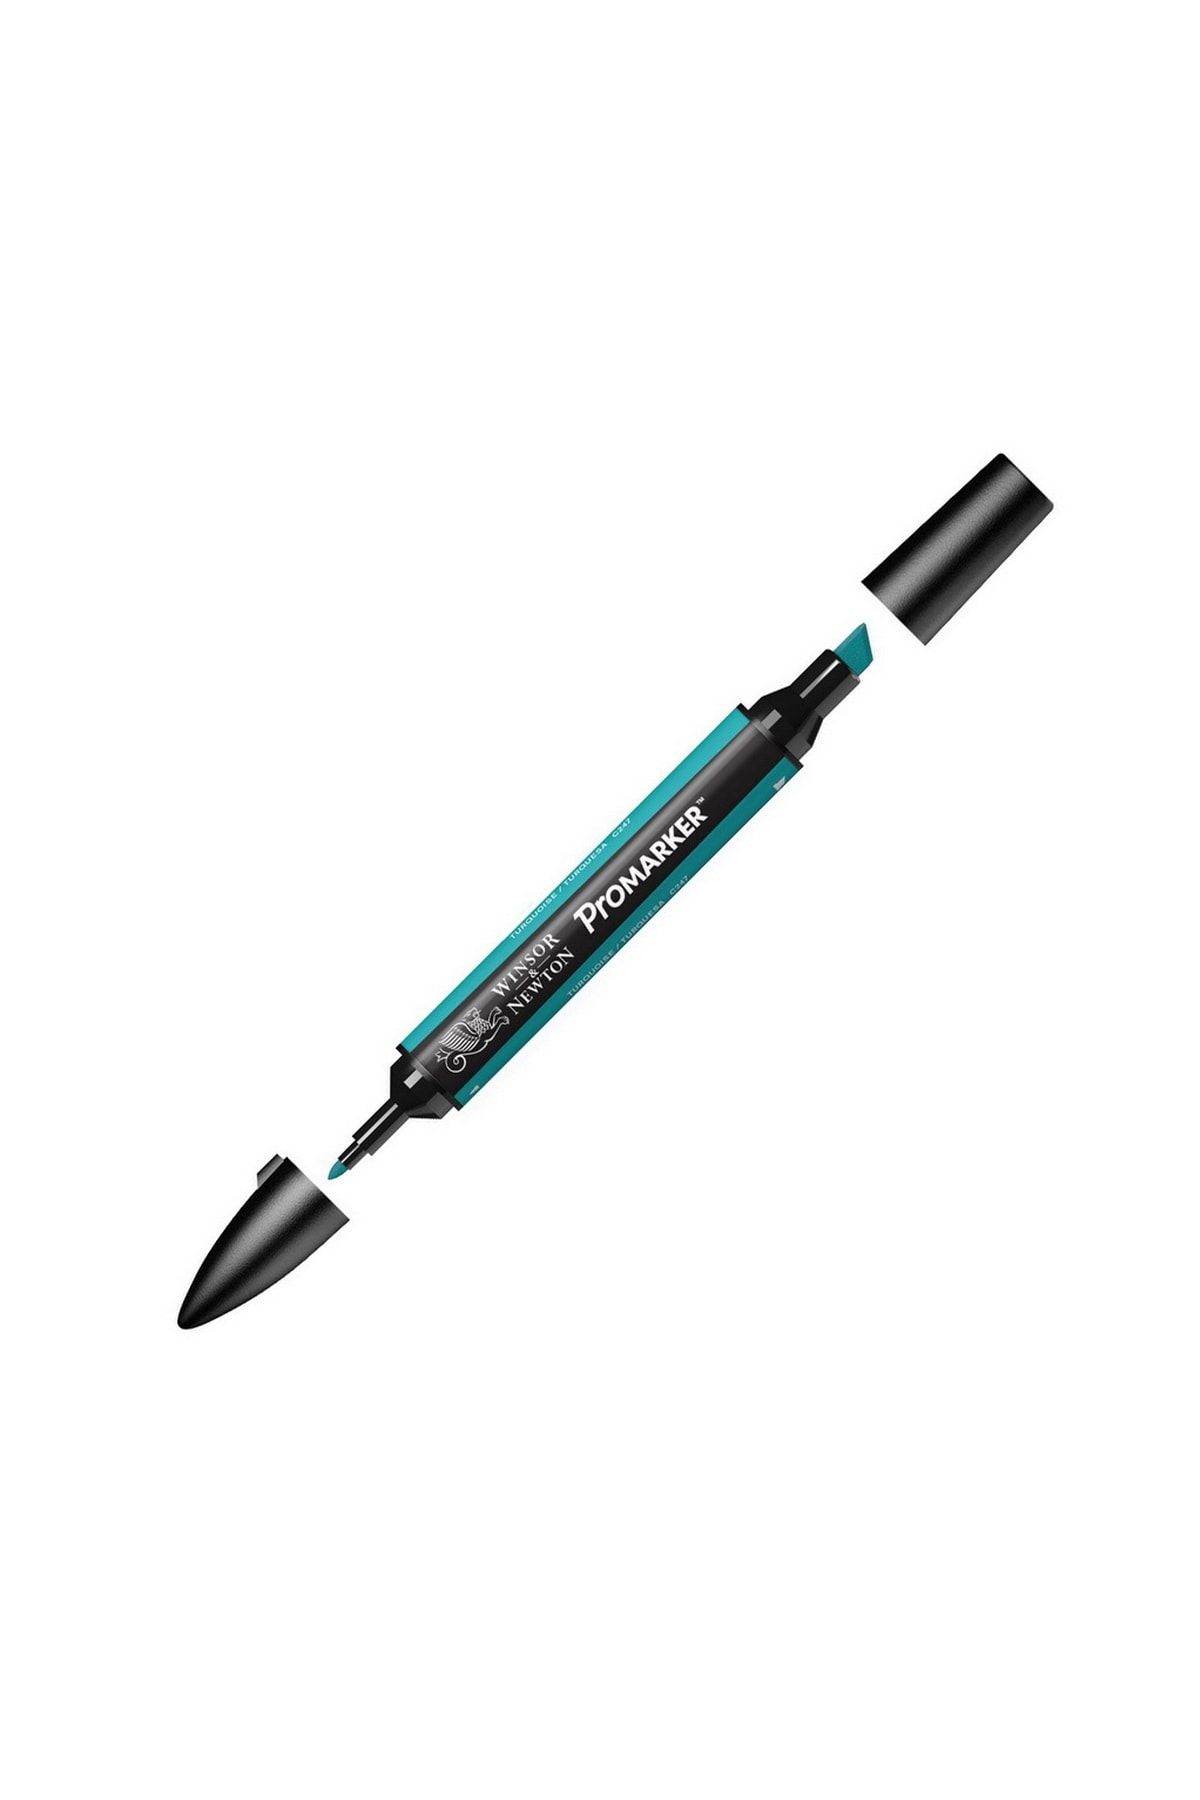 Winsor Newton Promarker Çift Uçlu Alkol Bazlı Grafik Çizim Kalemi Turquoise 654 (C247)